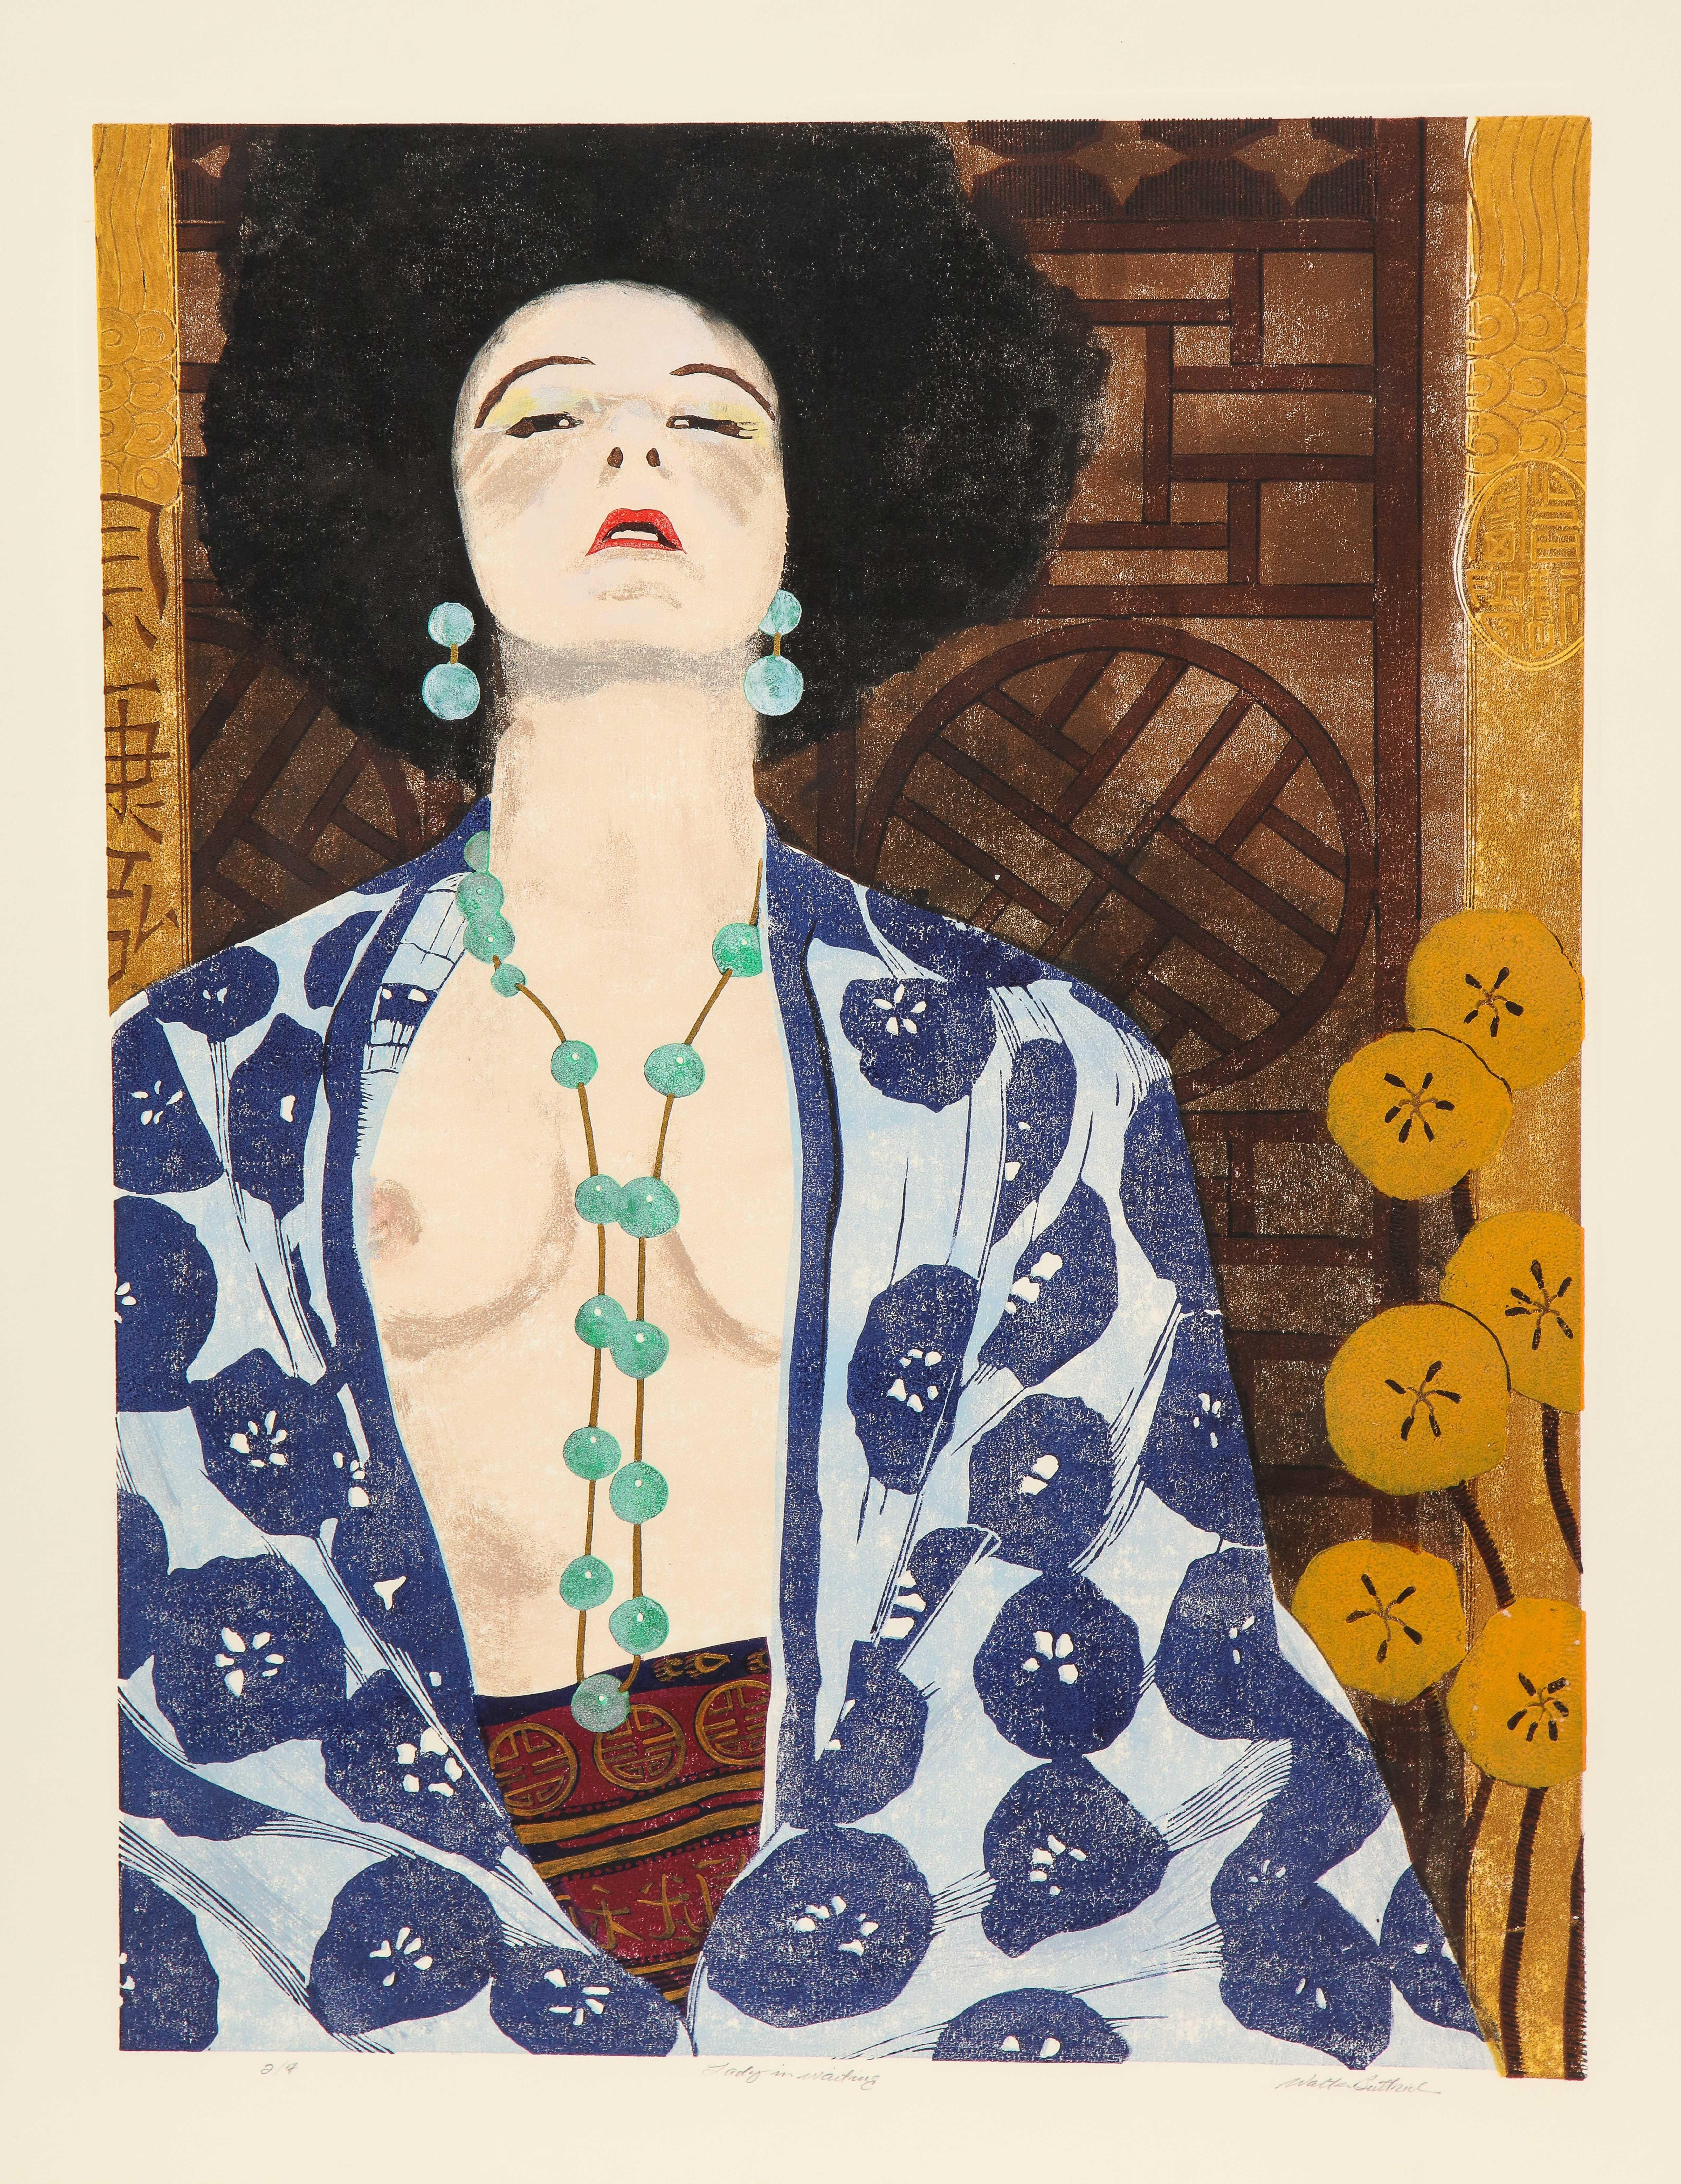 Ein wunderbarer Druck des Bostoner Künstlers, der eine Hommage an Gustav Klimt und den japanischen Holzschnitt ist. Die Figur sitzt im Vordergrund und ist teilweise mit einem lockeren Kimono bekleidet. Eine Kette aus türkisfarbenen Perlen fällt